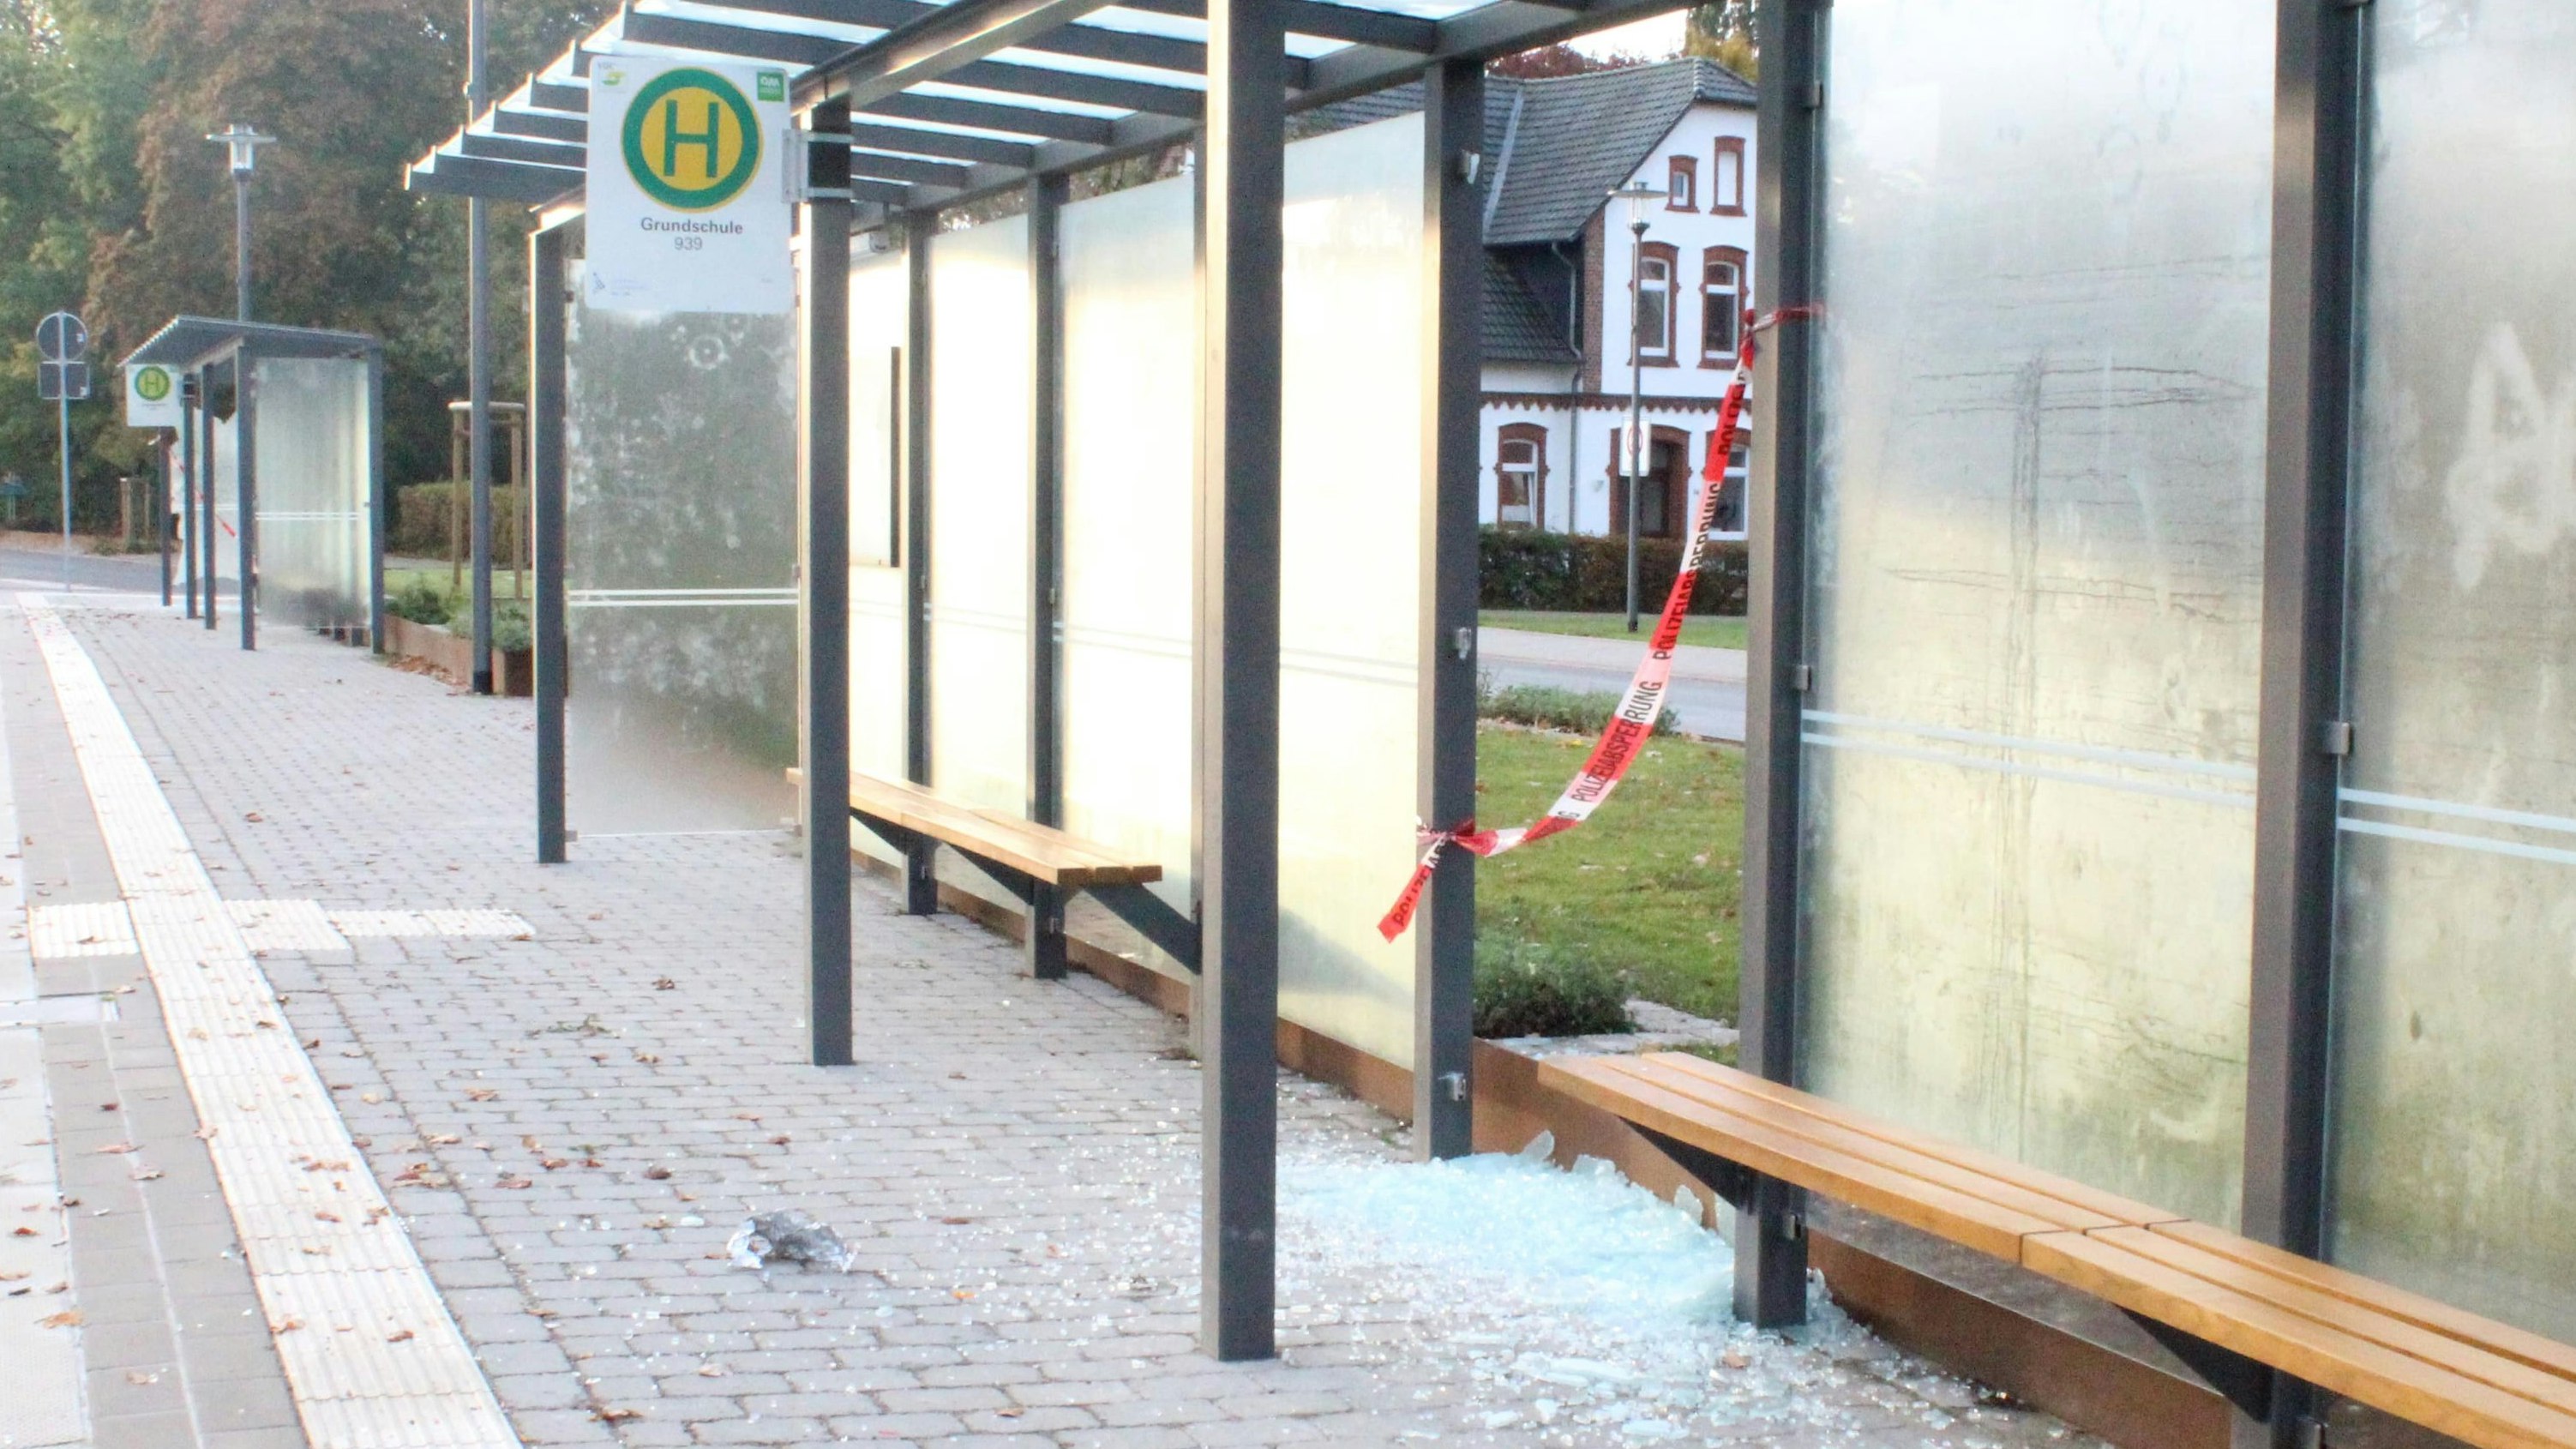 Zerstört: Der neue Busbahnhof wurde bereits in Mitleidenschaft gezogen. Foto: Gemeinde Essen